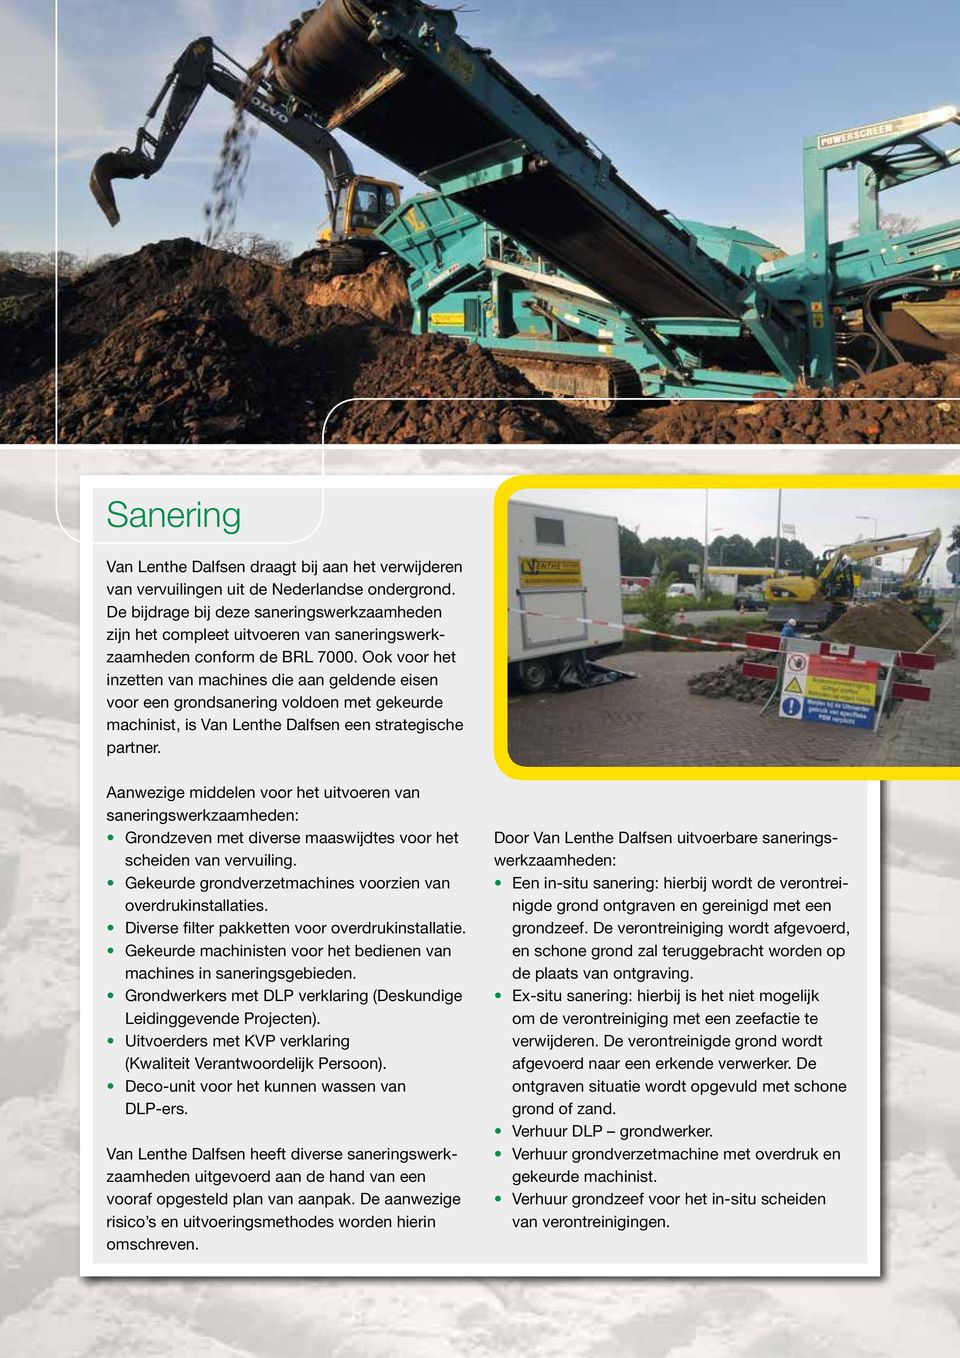 Ook voor het inzetten van machines die aan geldende eisen voor een grondsanering voldoen met gekeurde machinist, is Van Lenthe Dalfsen een strategische partner.